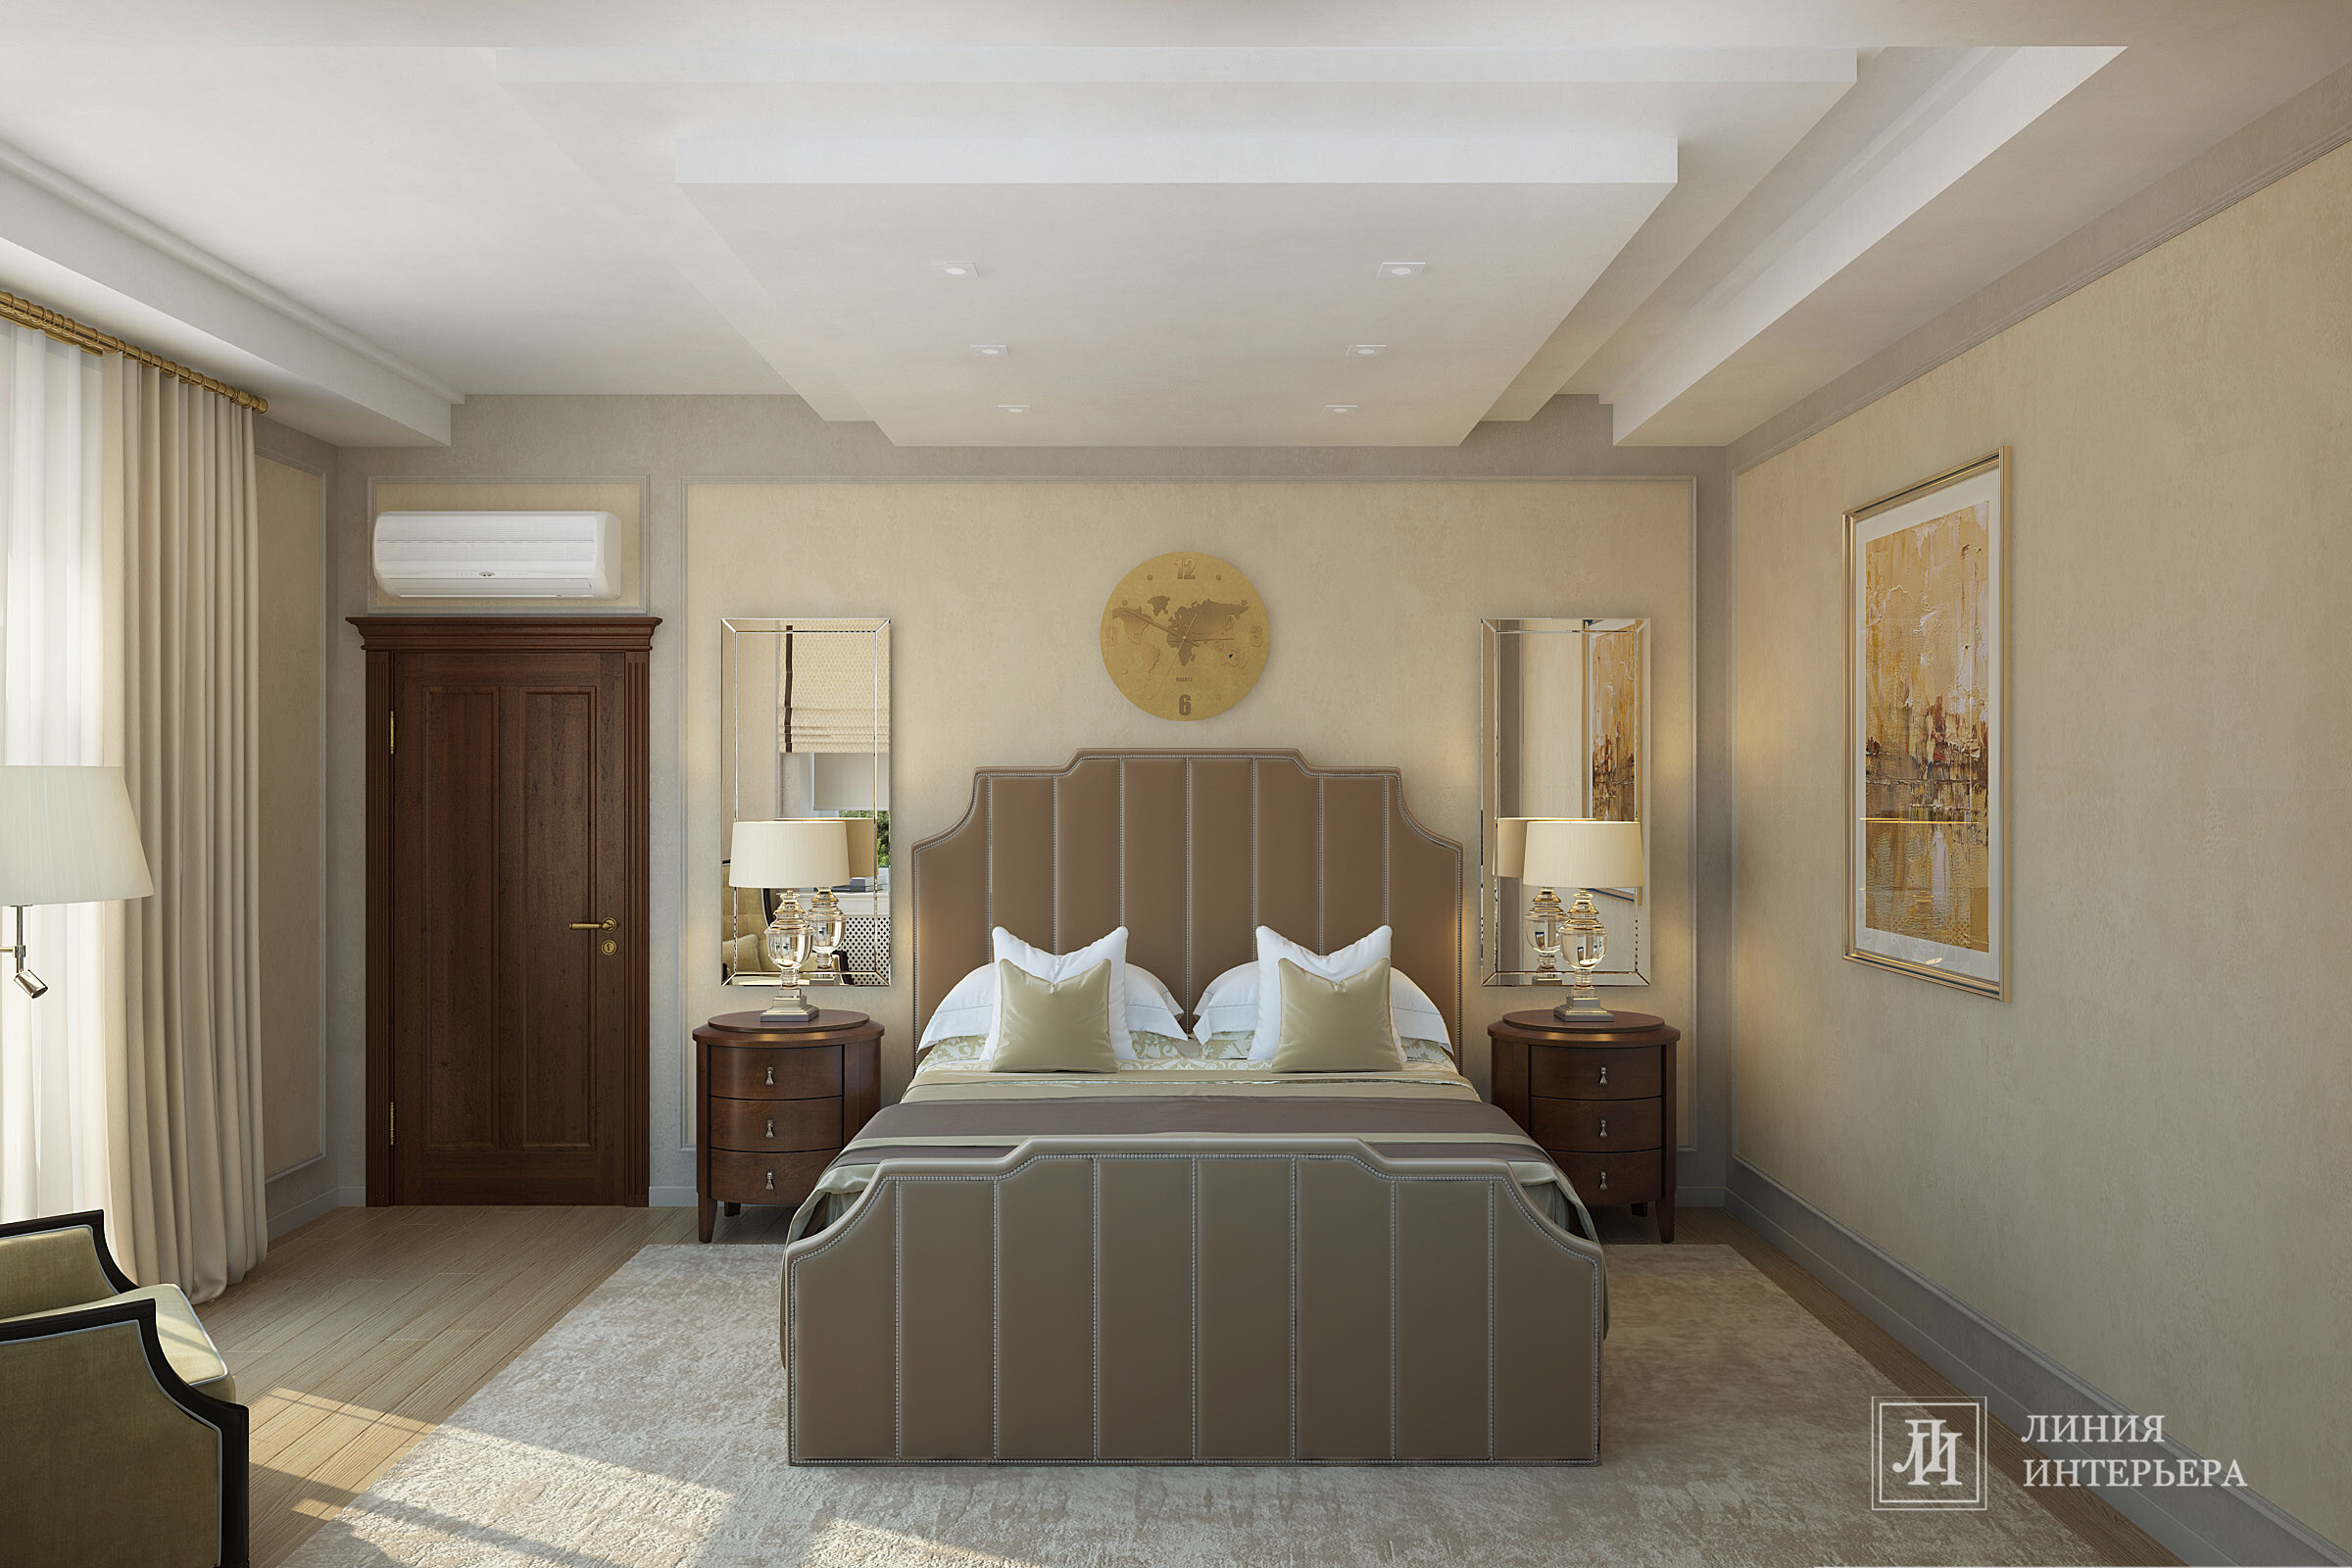 Интерьер спальни cветильниками над кроватью в неоклассике, в классическом стиле и в стиле кантри